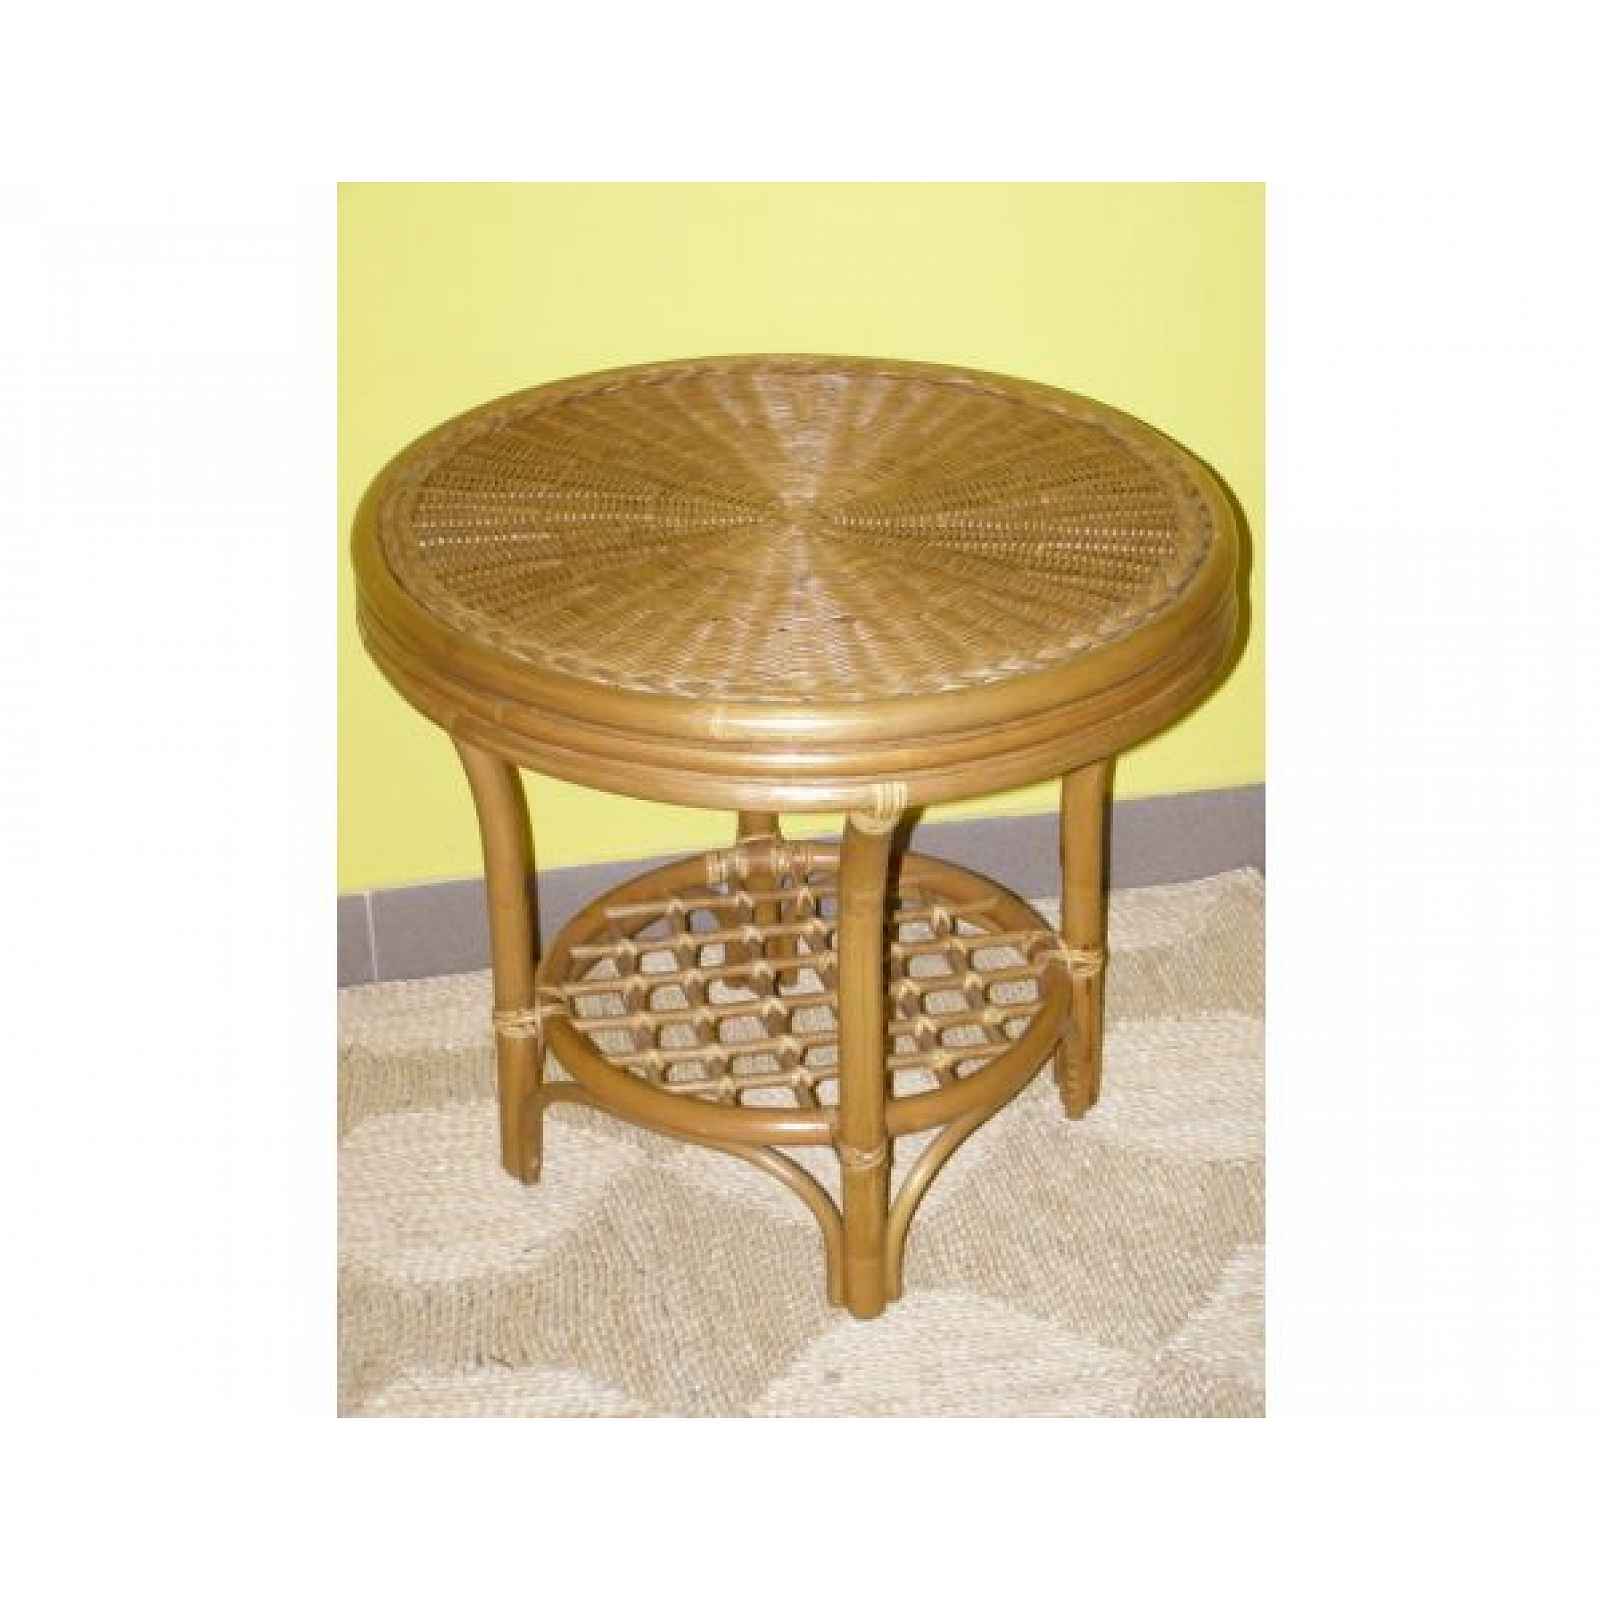 Ratanový stolek JANEIRO, světlý